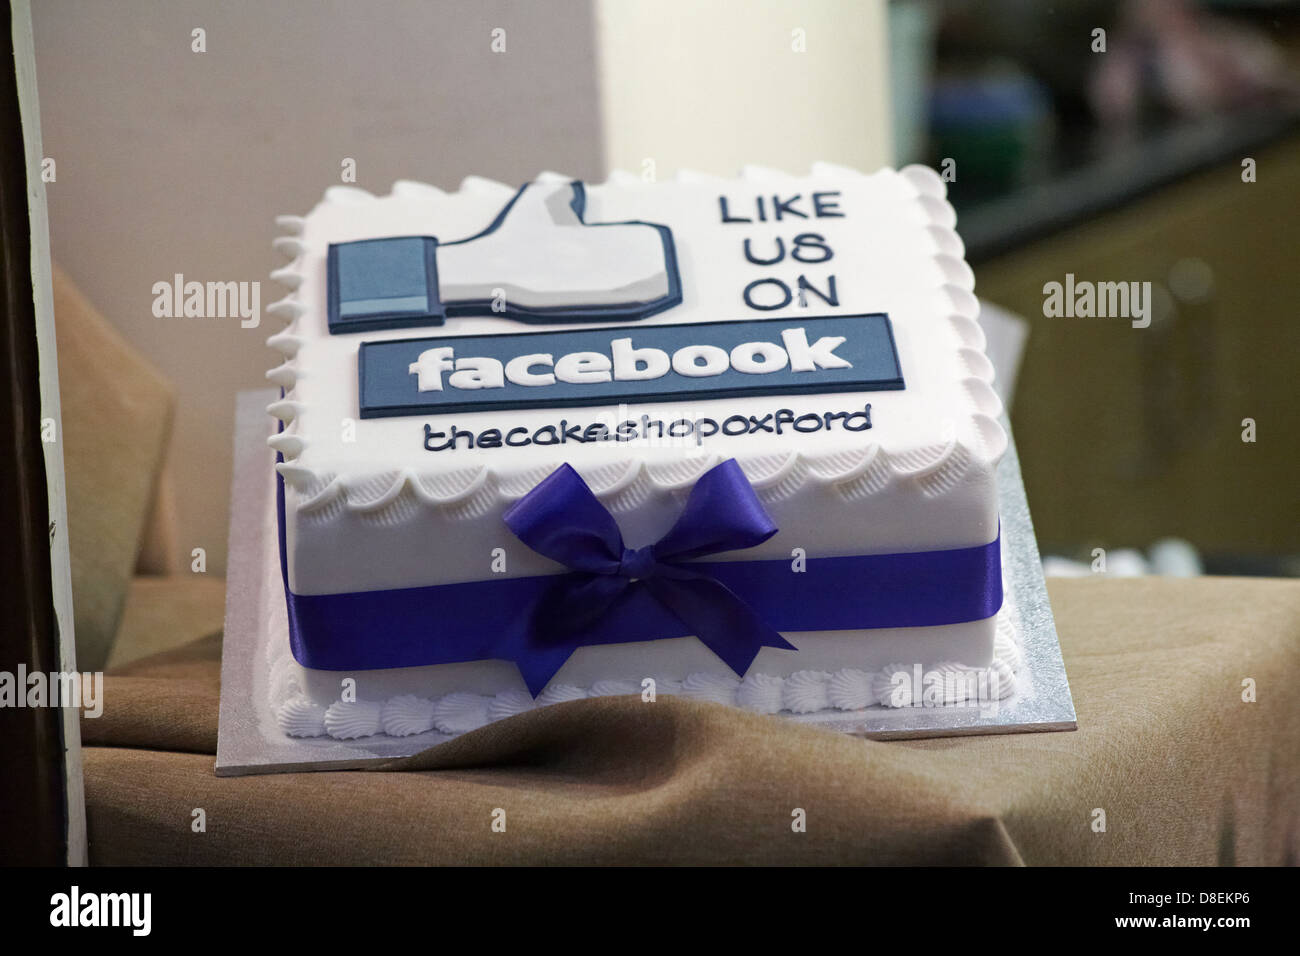 Aimez-nous sur Facebook gâteau glacé en vitrine pour thecakeshopoxford à Oxford, Oxfordshire Royaume-Uni en mai Banque D'Images